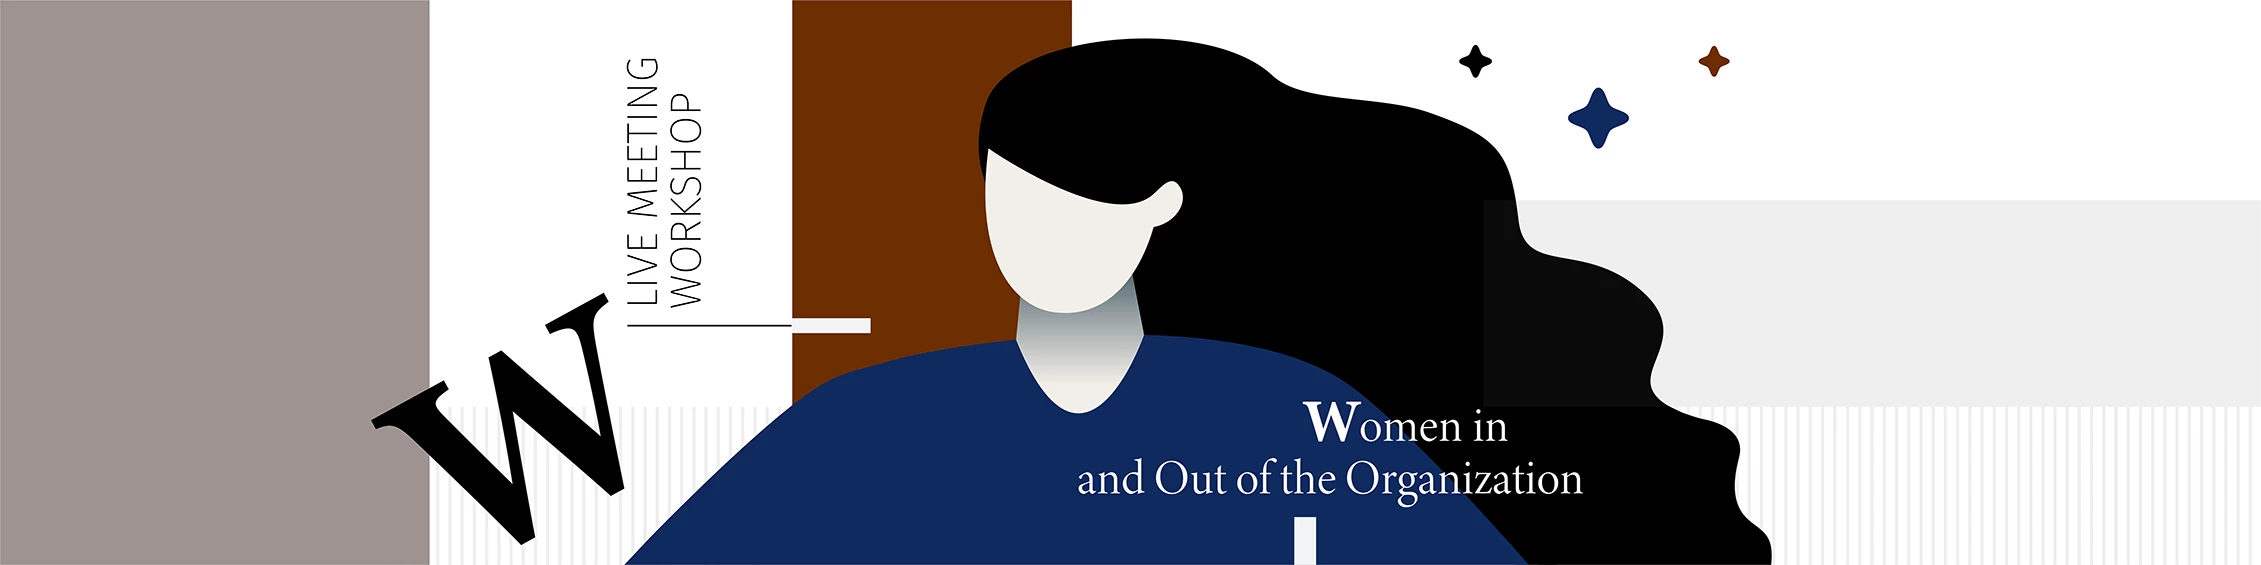 News: Семинар LIVE Meeting - расширение социальных и экономических прав и возможностей женщин в организации и за ее пределами